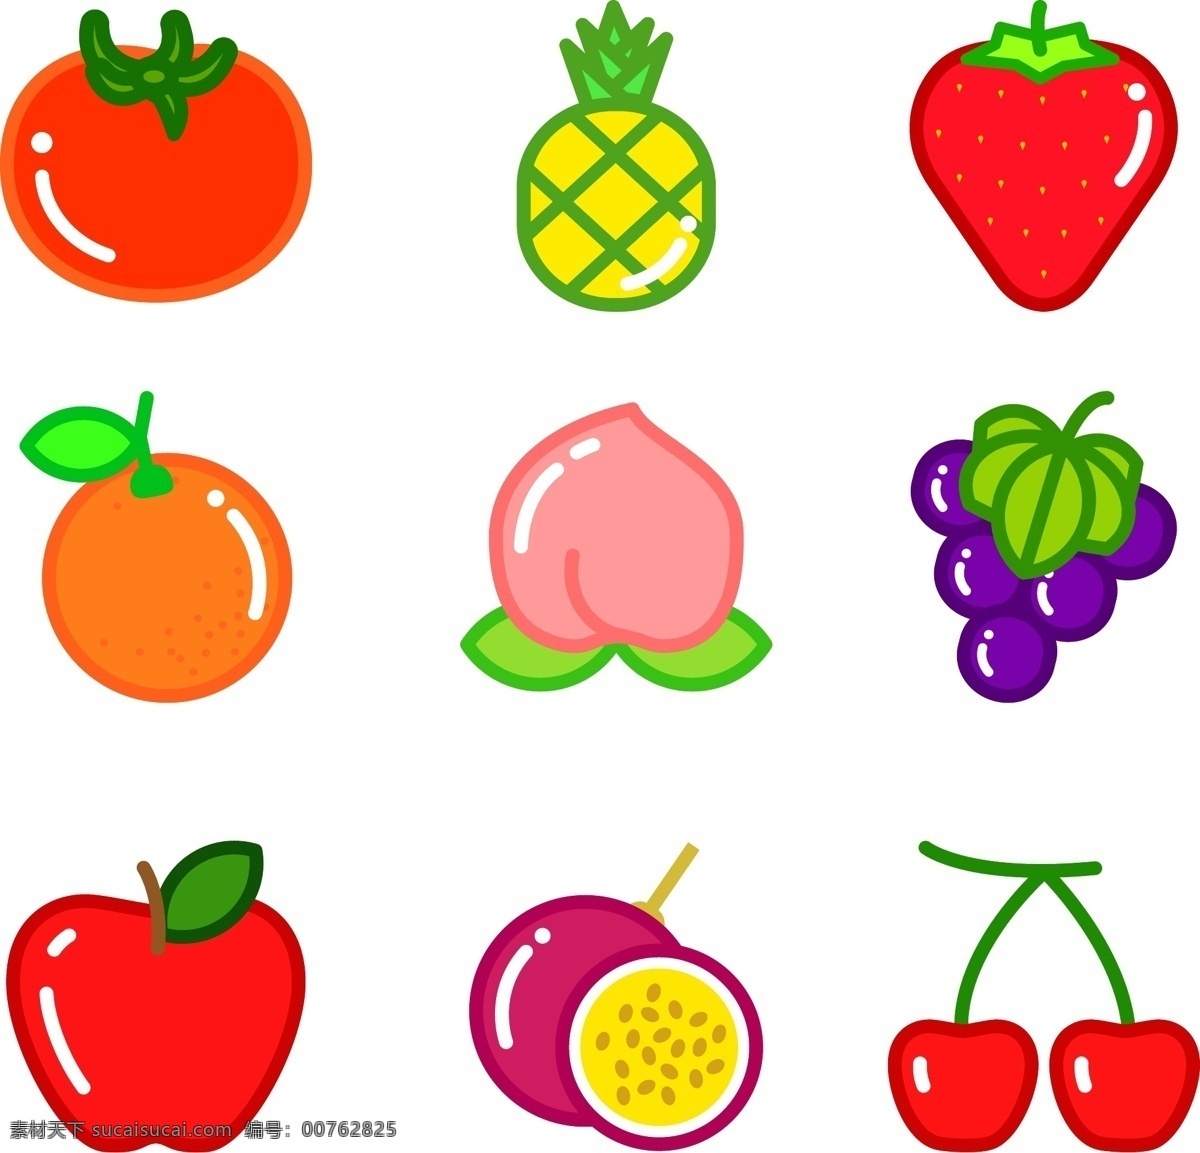 各种 水果 简笔 画图 标 苹果 菠萝 草莓 橙子 水蜜桃 葡萄 西红柿 百香果 樱桃